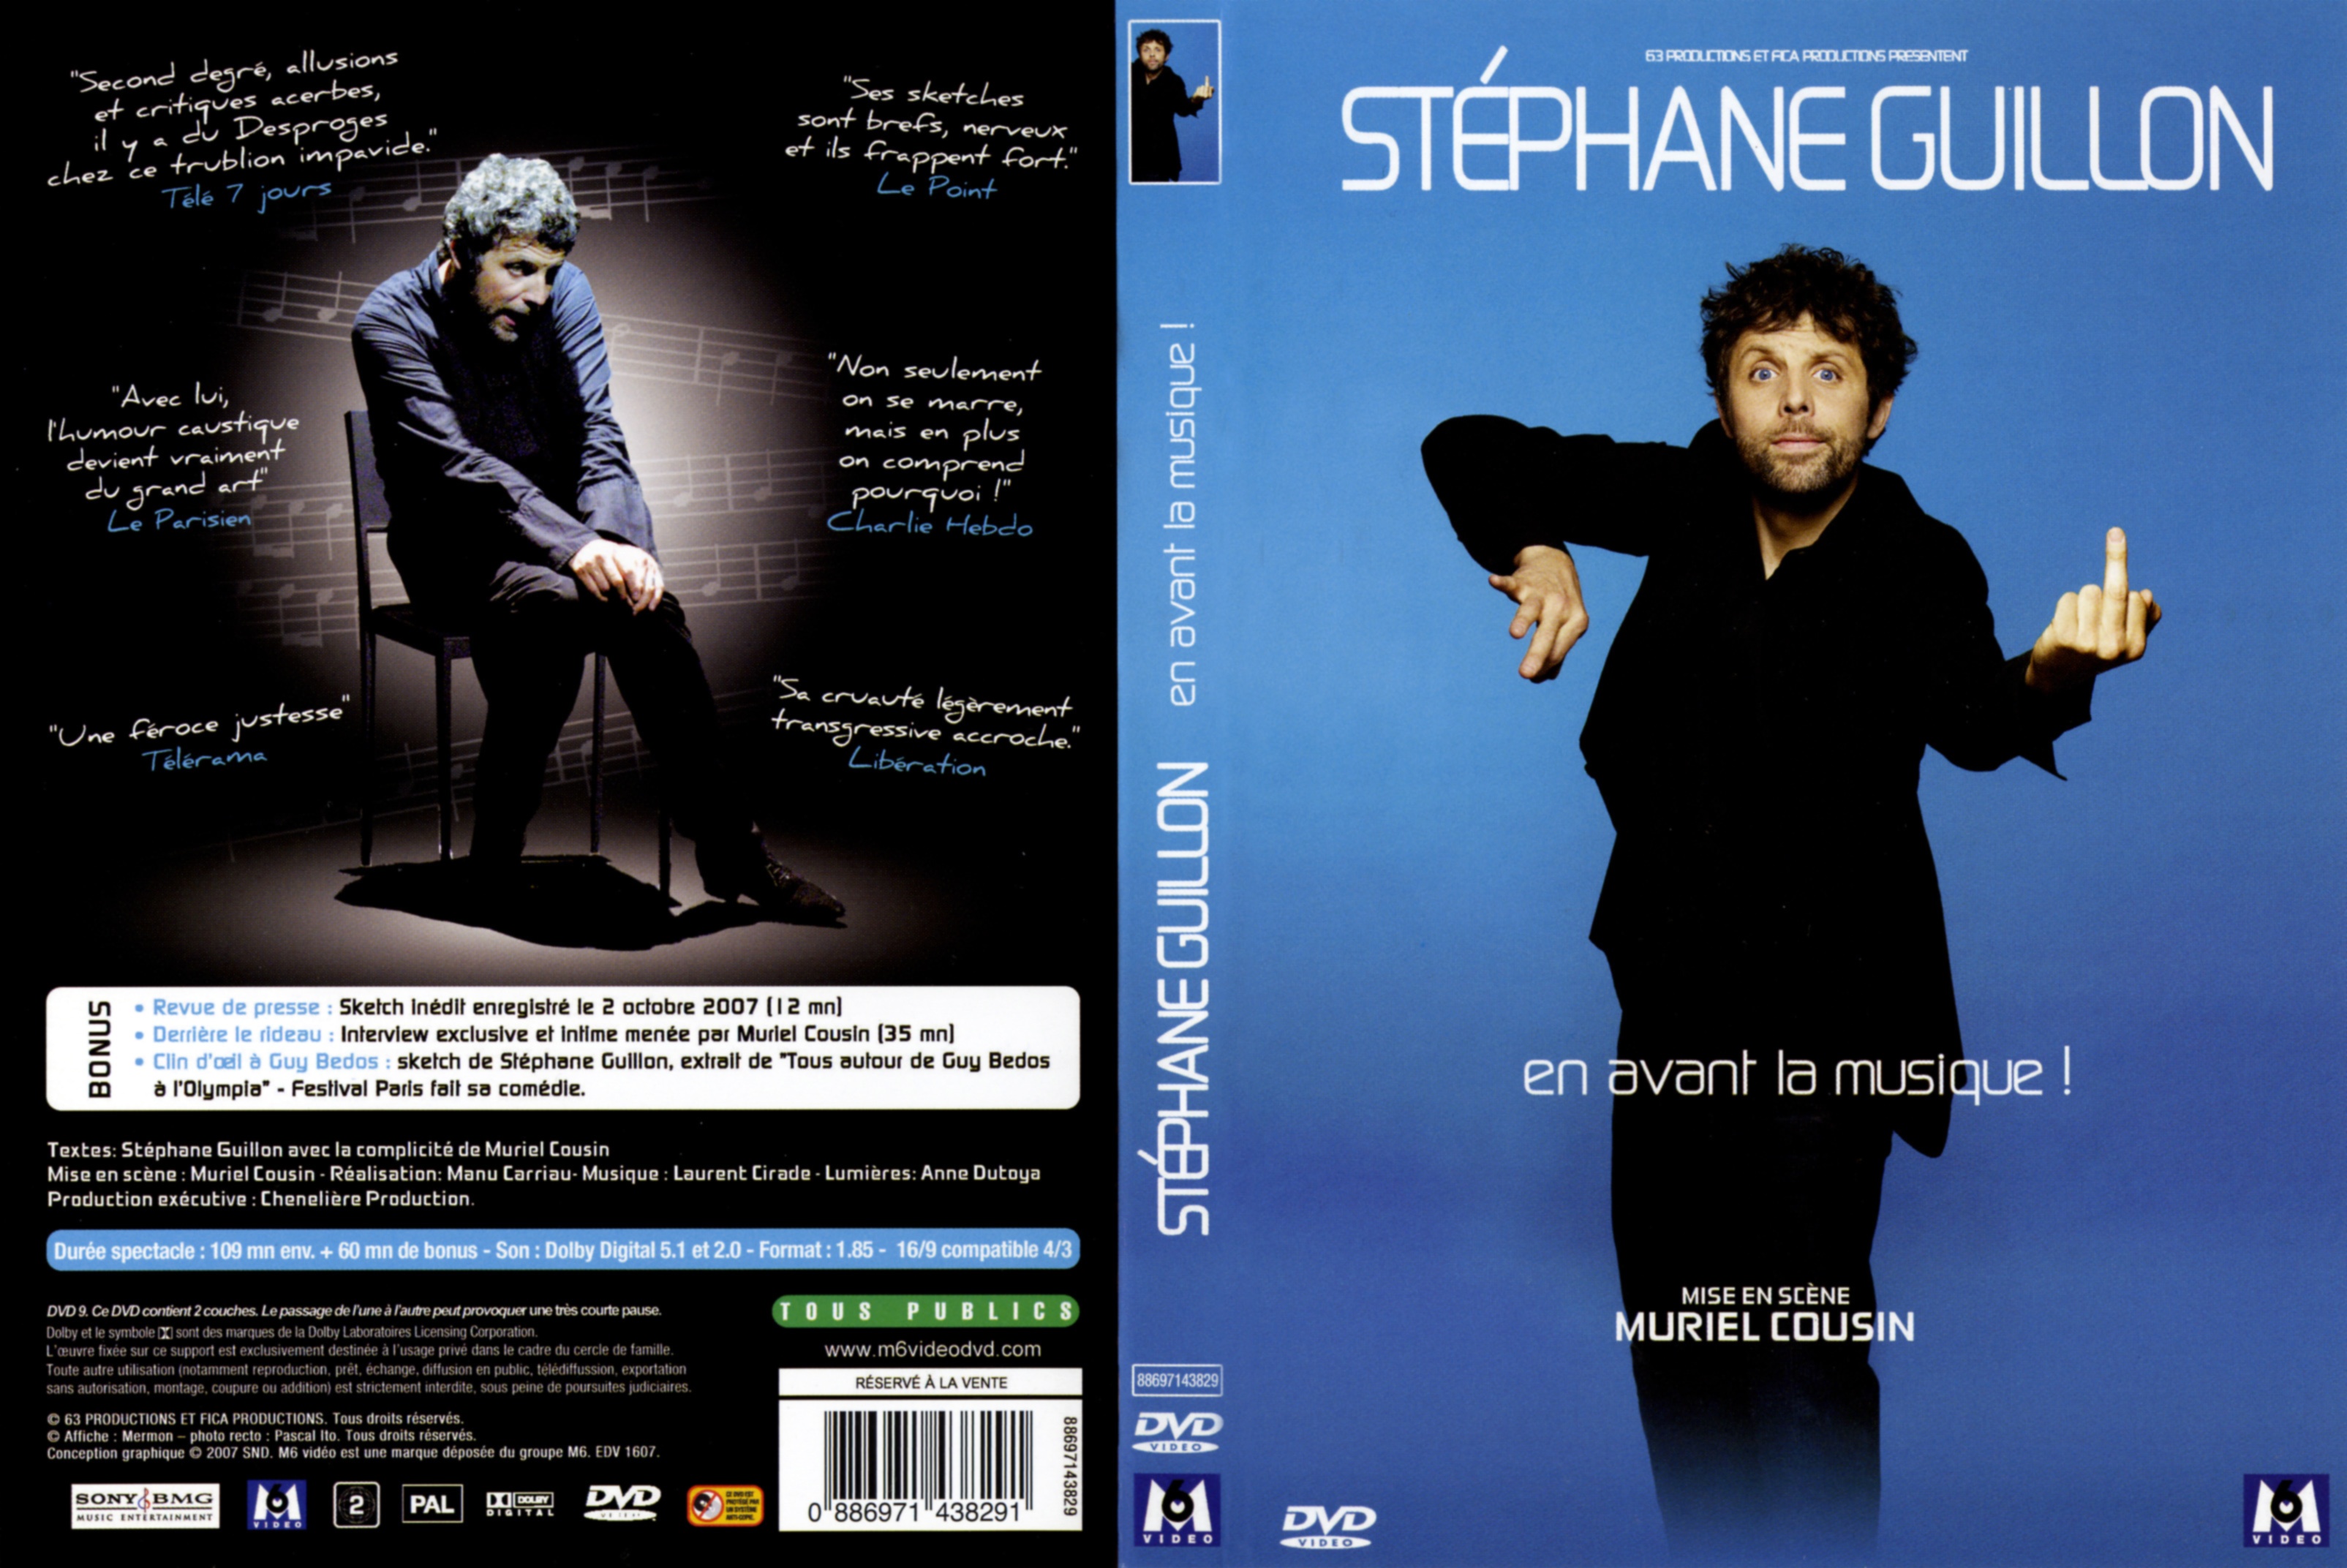 Jaquette DVD Stephane Guillon En avant la musique